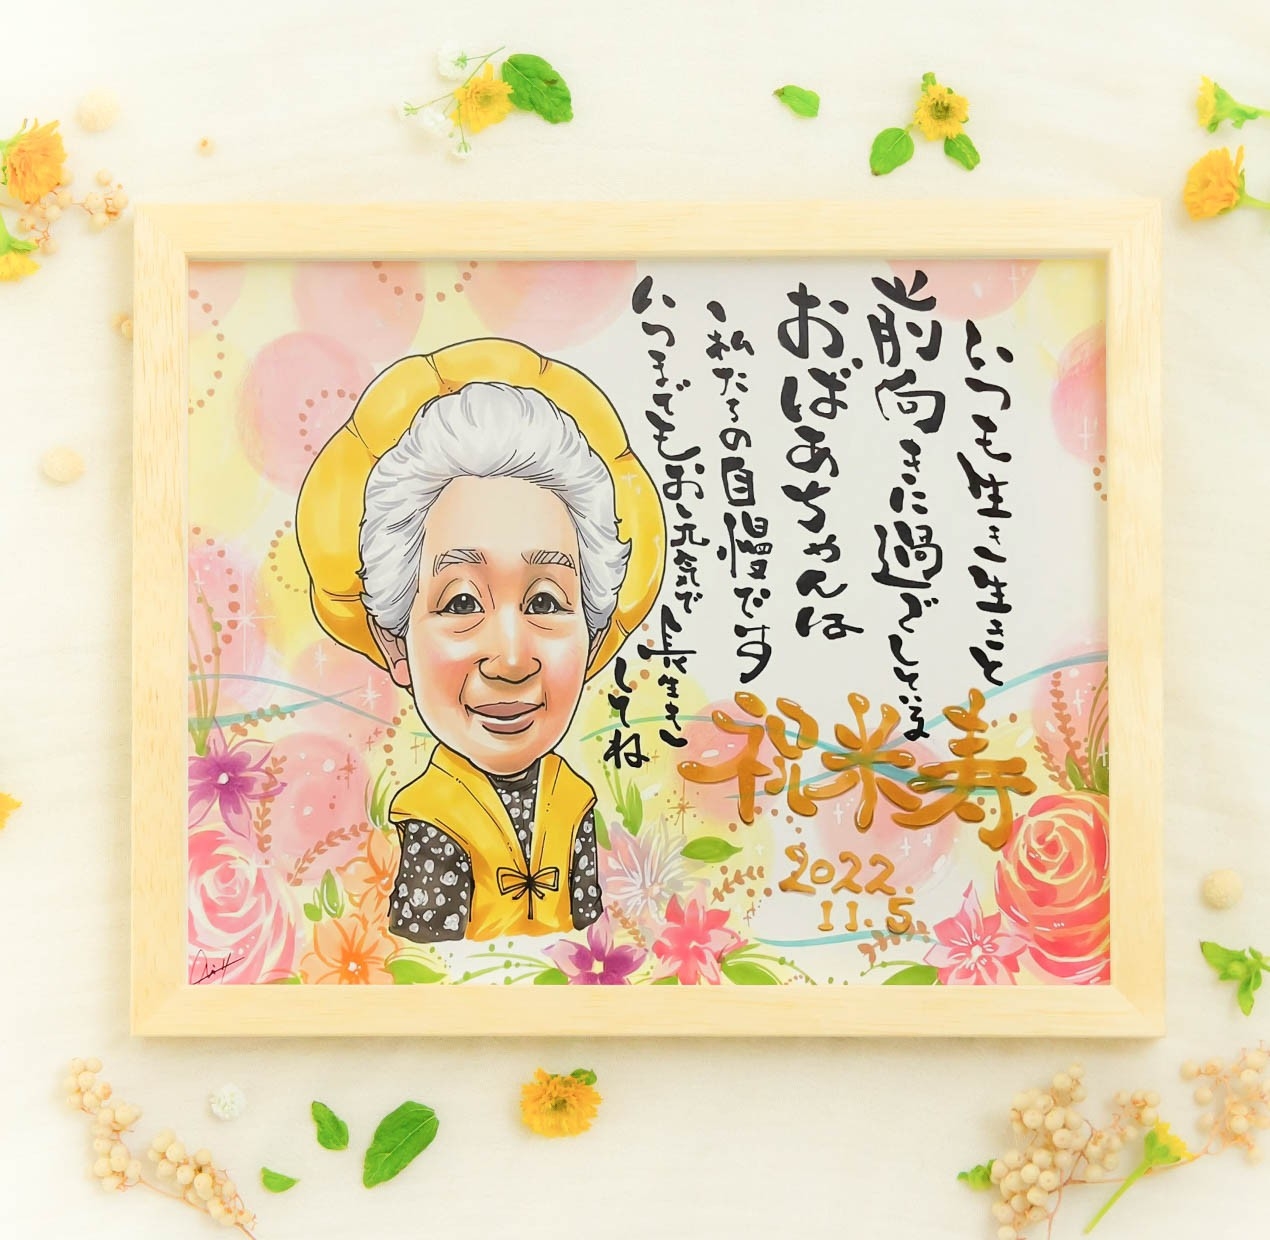 おばあちゃんの米寿祝い